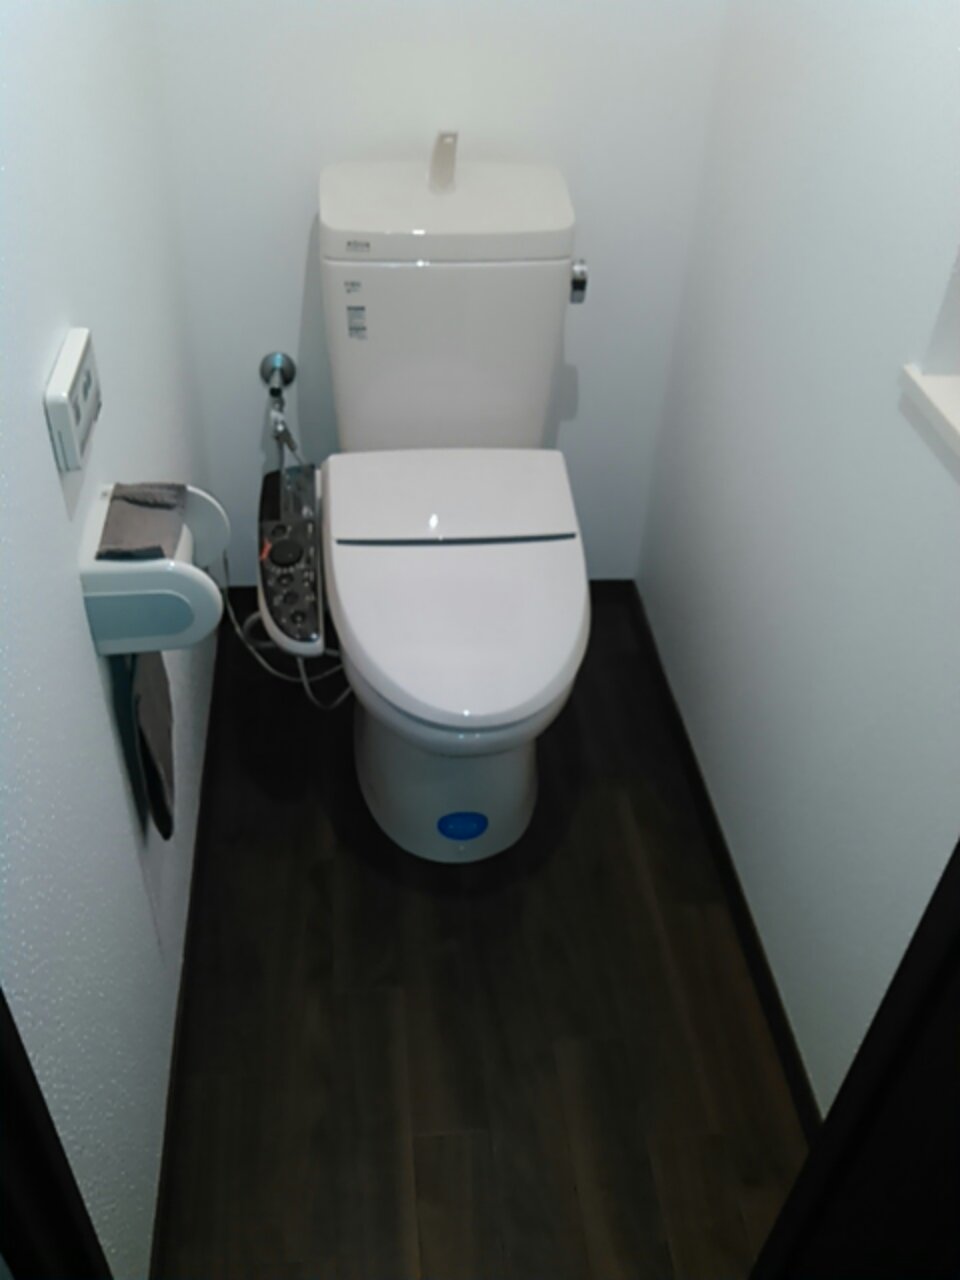 リクシルのトイレ交換シャワートイレKシリーズ Handymanリフォームブログ